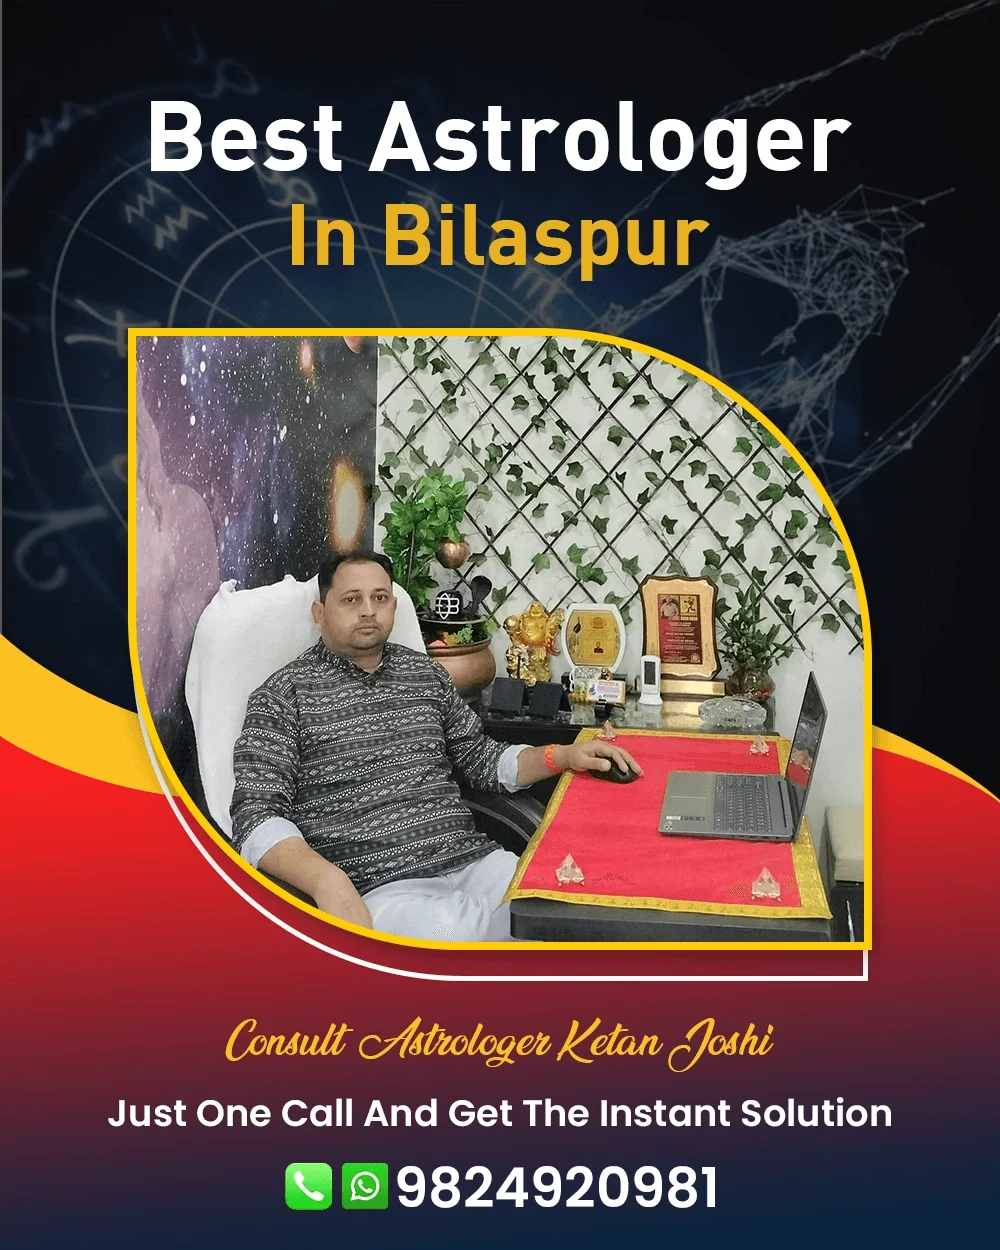 Best Astrologer In Bilaspur